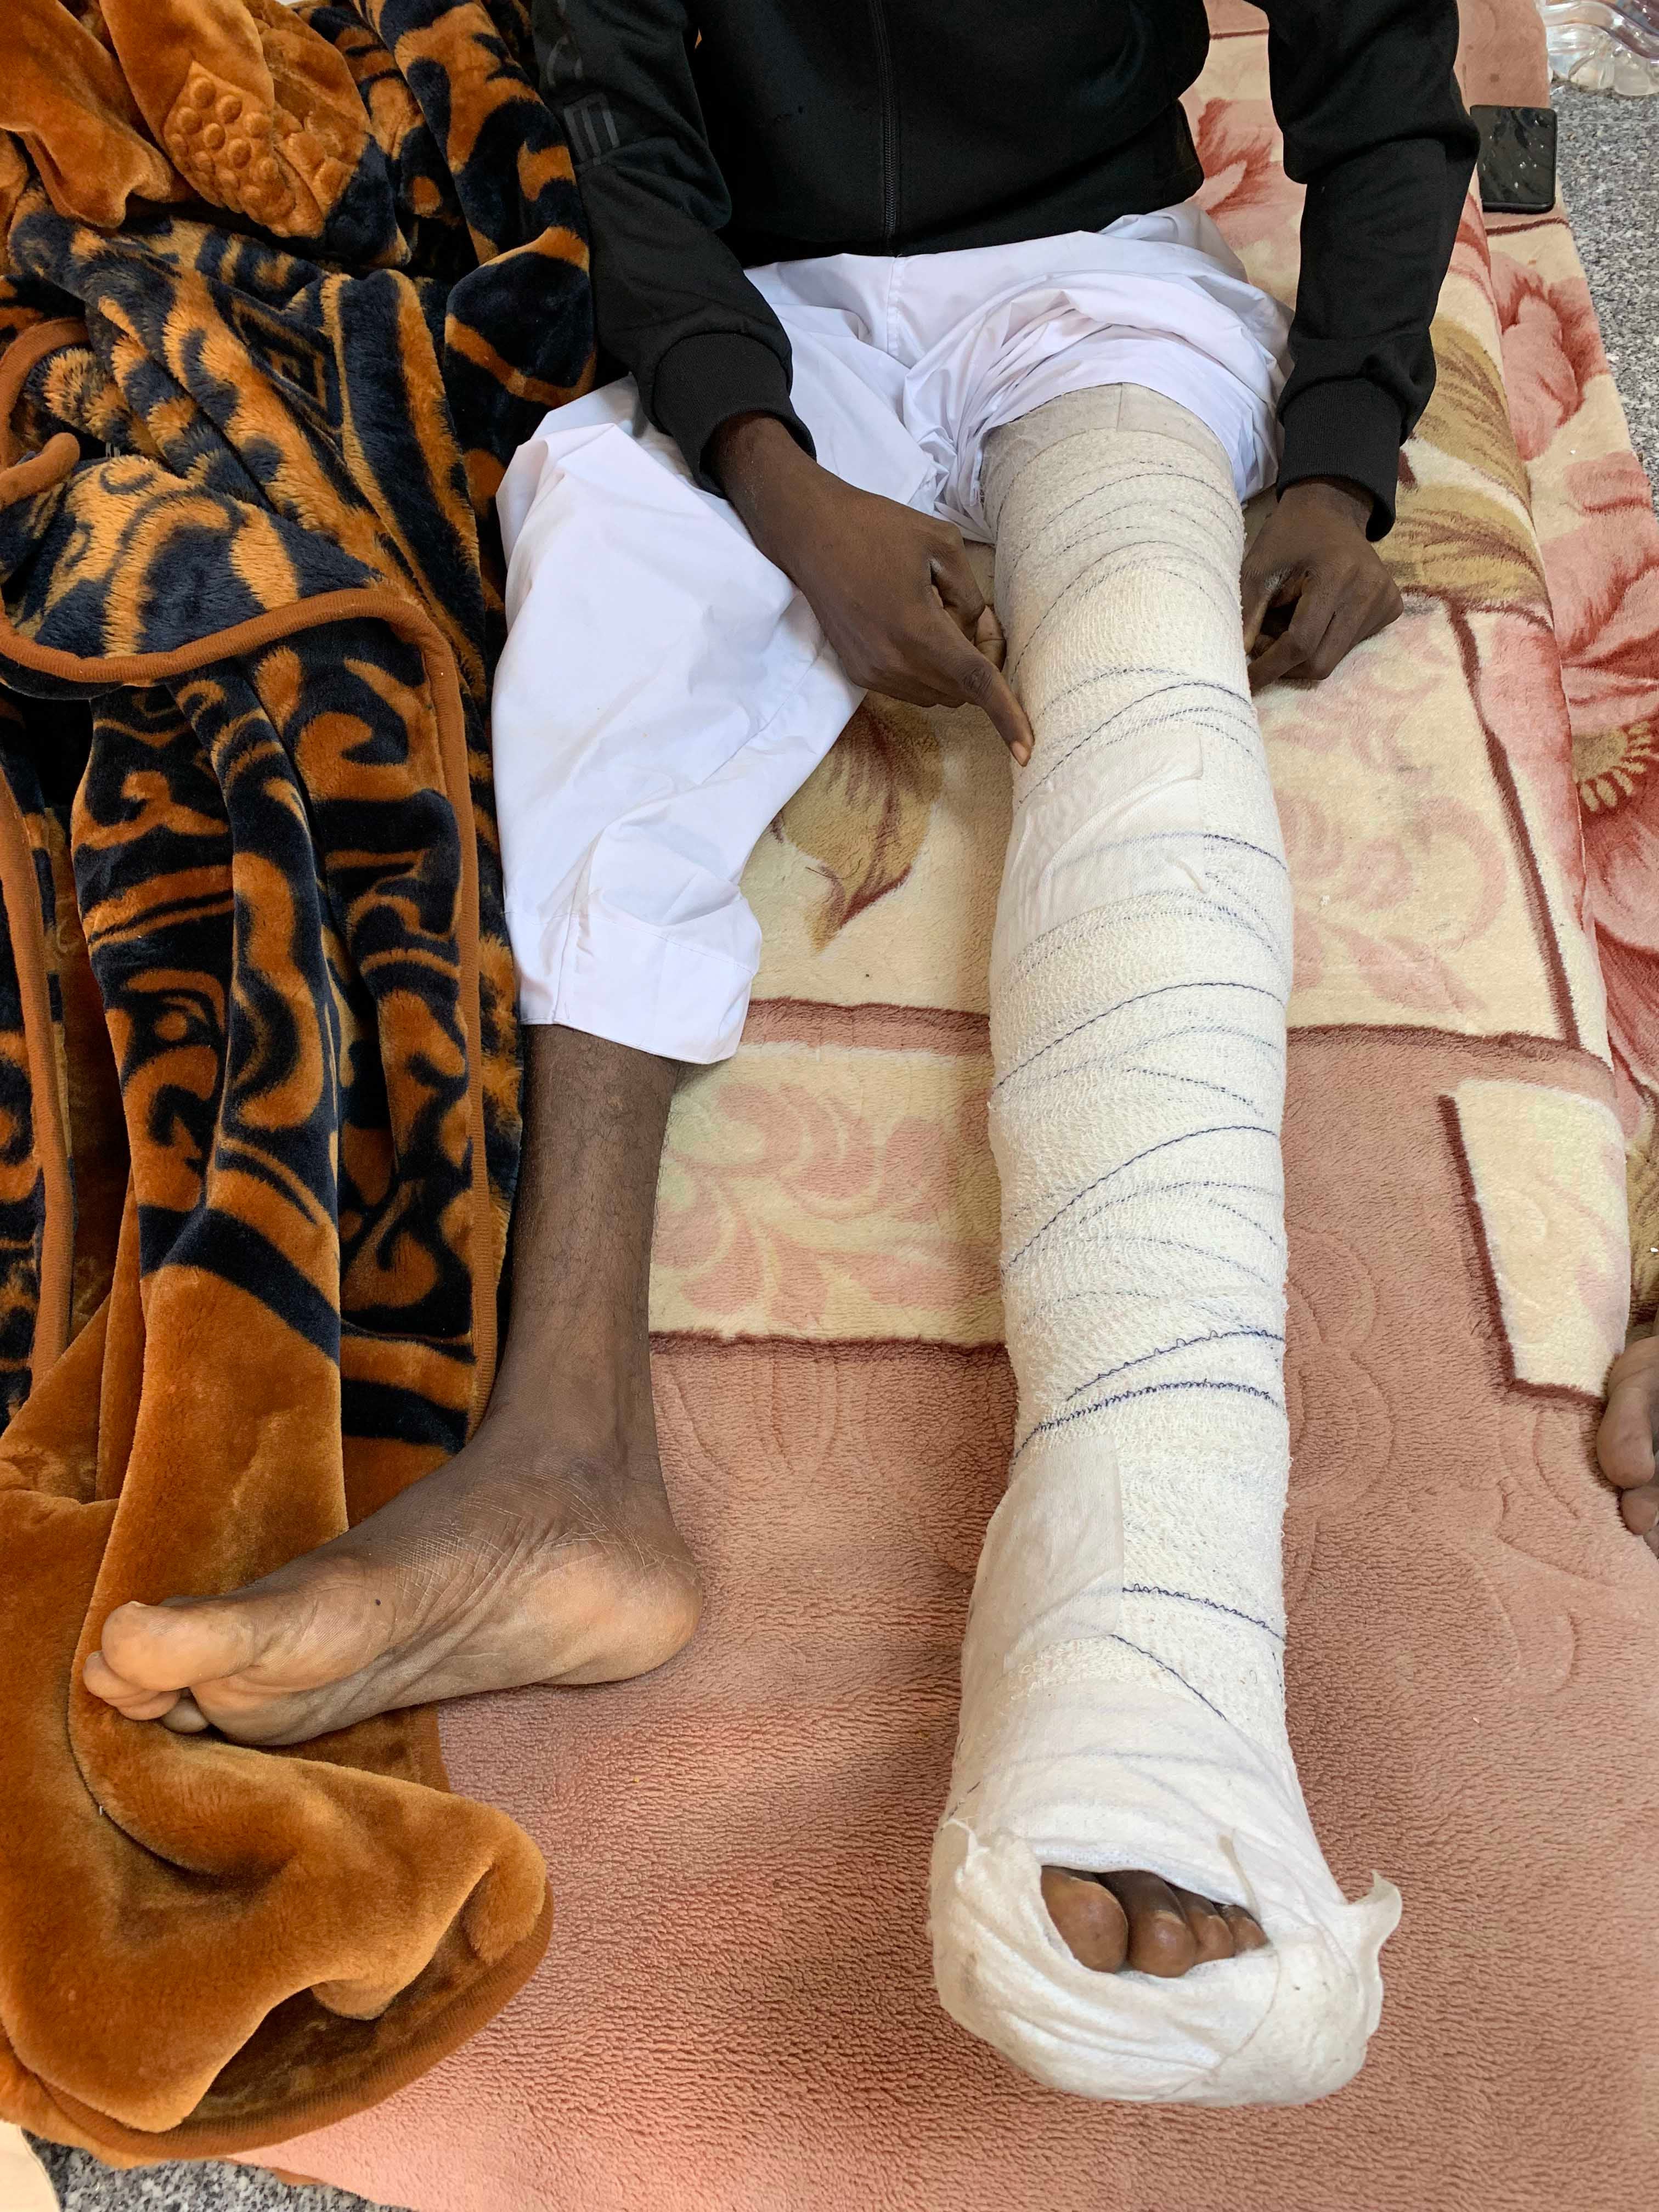 عامل مصنع يتعافى من إصابة في ركبته بعد هجمة بطائرة مسيّرة إماراتية على مصنع بسكويت في أطراف العاصمة الليبية طرابلس قتلت ثمانية مدنيين وجرحت 27 آخرين. ديسمبر/كانون الأول 2019، وادي الربيع، ليبيا.